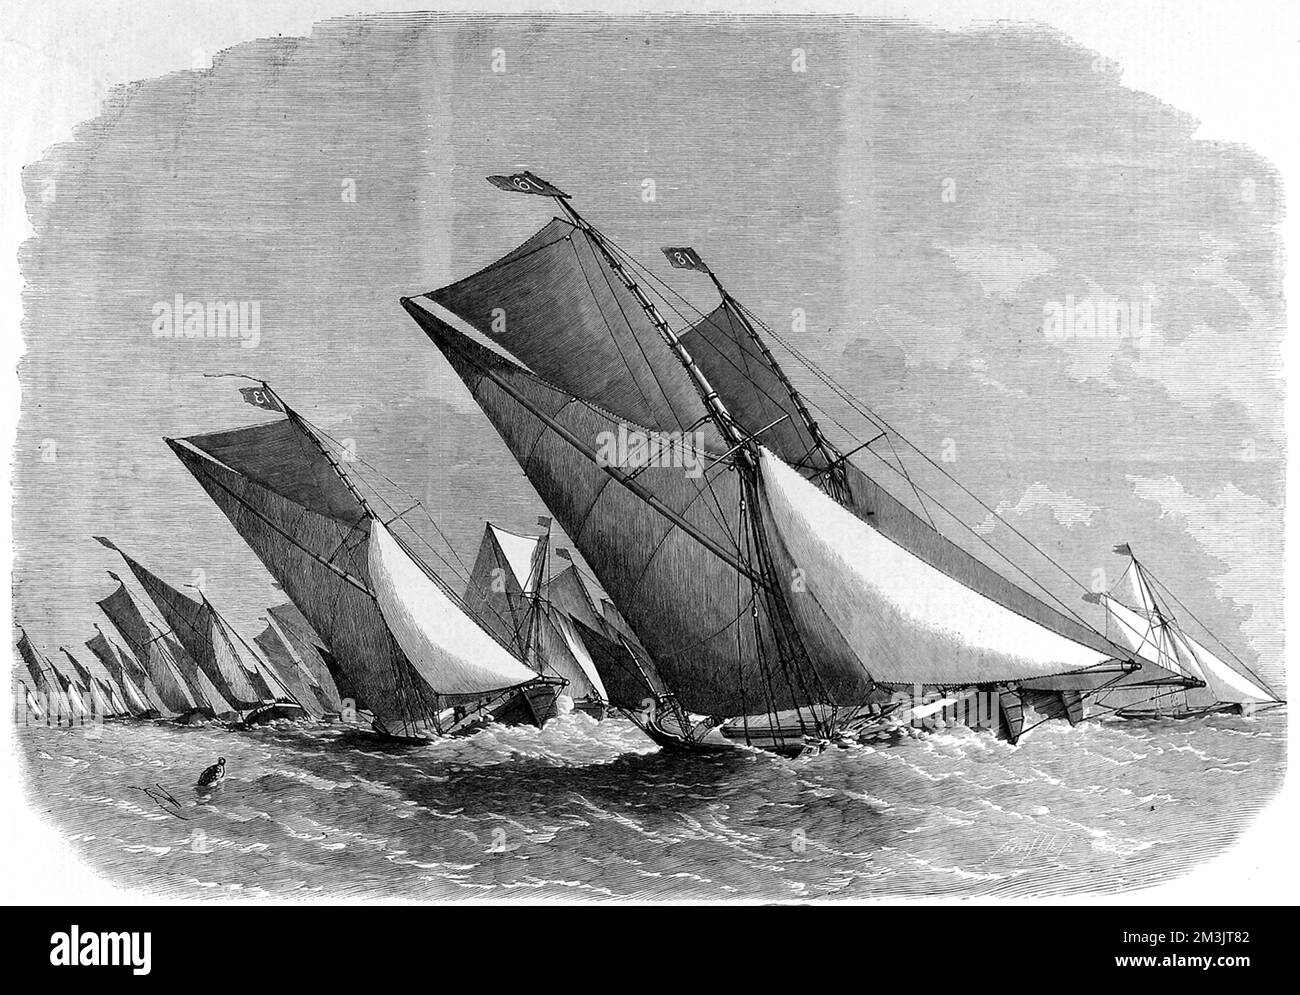 Segelschiff-Spiel auf der Themse. Dieses Spiel wurde vom Prince of Wales Yacht Club auf einem Kurs von Erith zum Chapman Light und zurück ausgerichtet, an dem 40 Topsegel und überrumpelte Schiffe teilnahmen. Topsegelkahn. 1864 Stockfoto